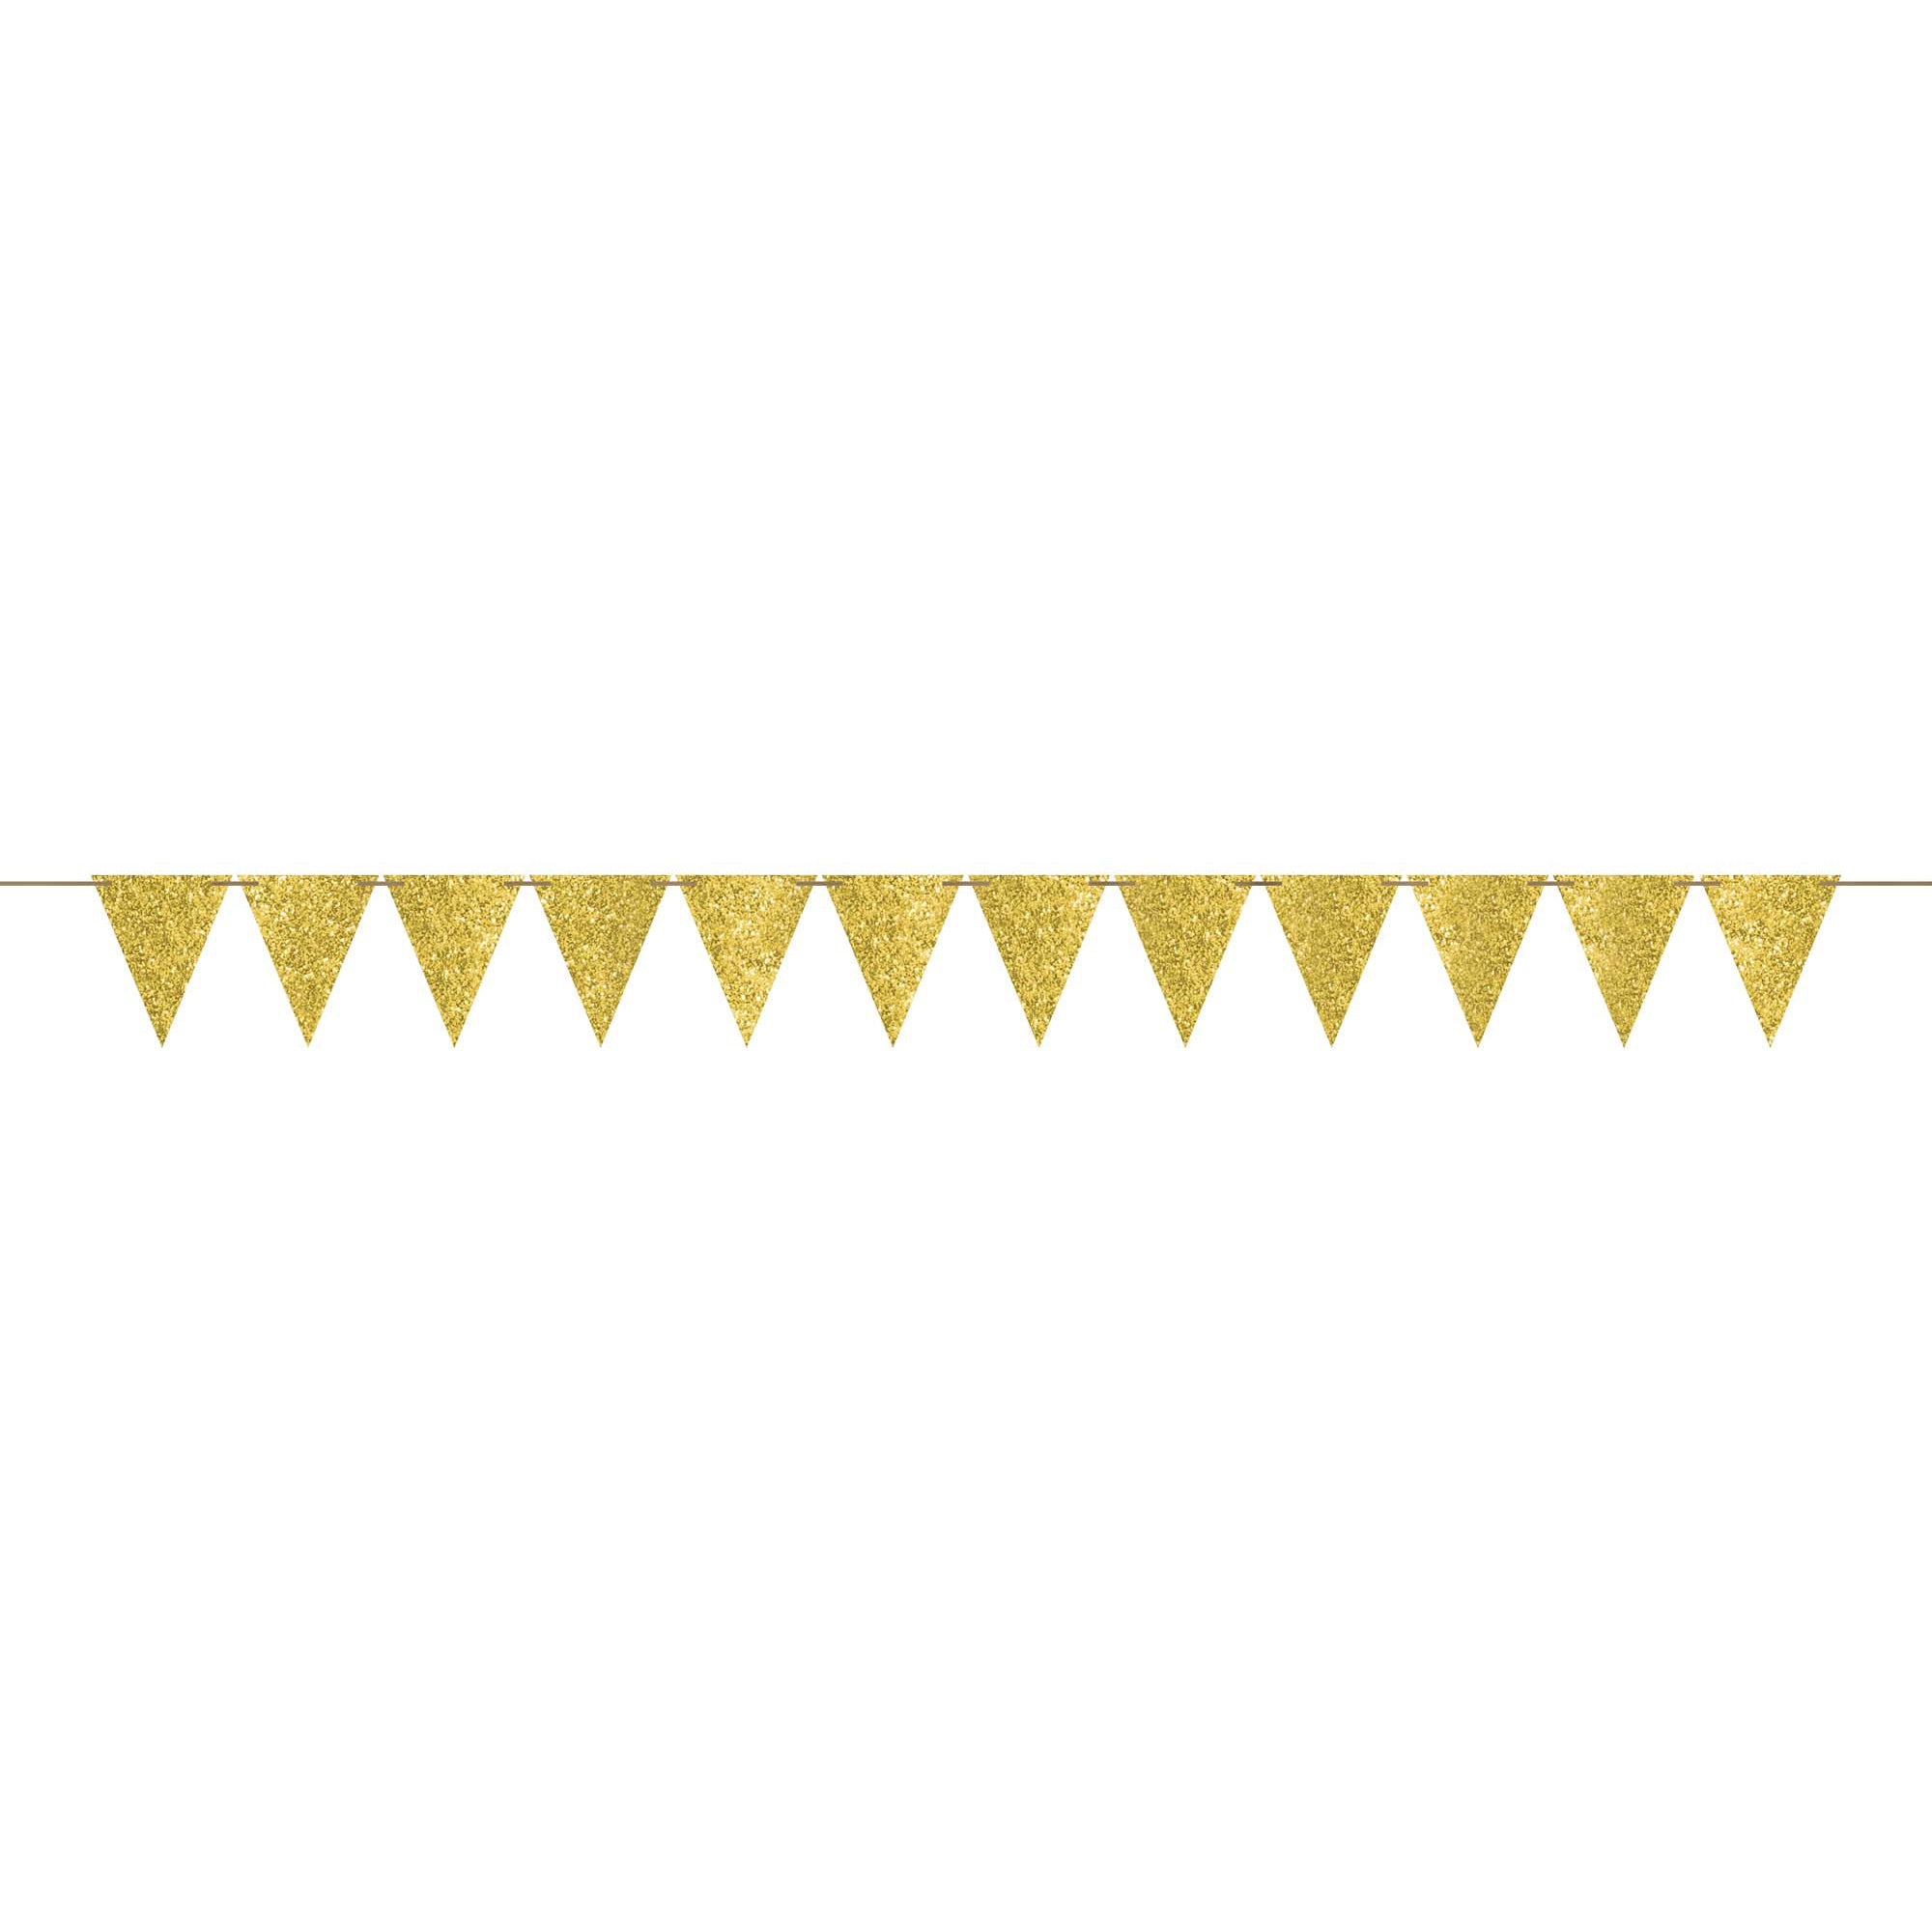 لافتة زينة بأعلام مثلثية ورقية بلون ذهبي لامع - Party Centre